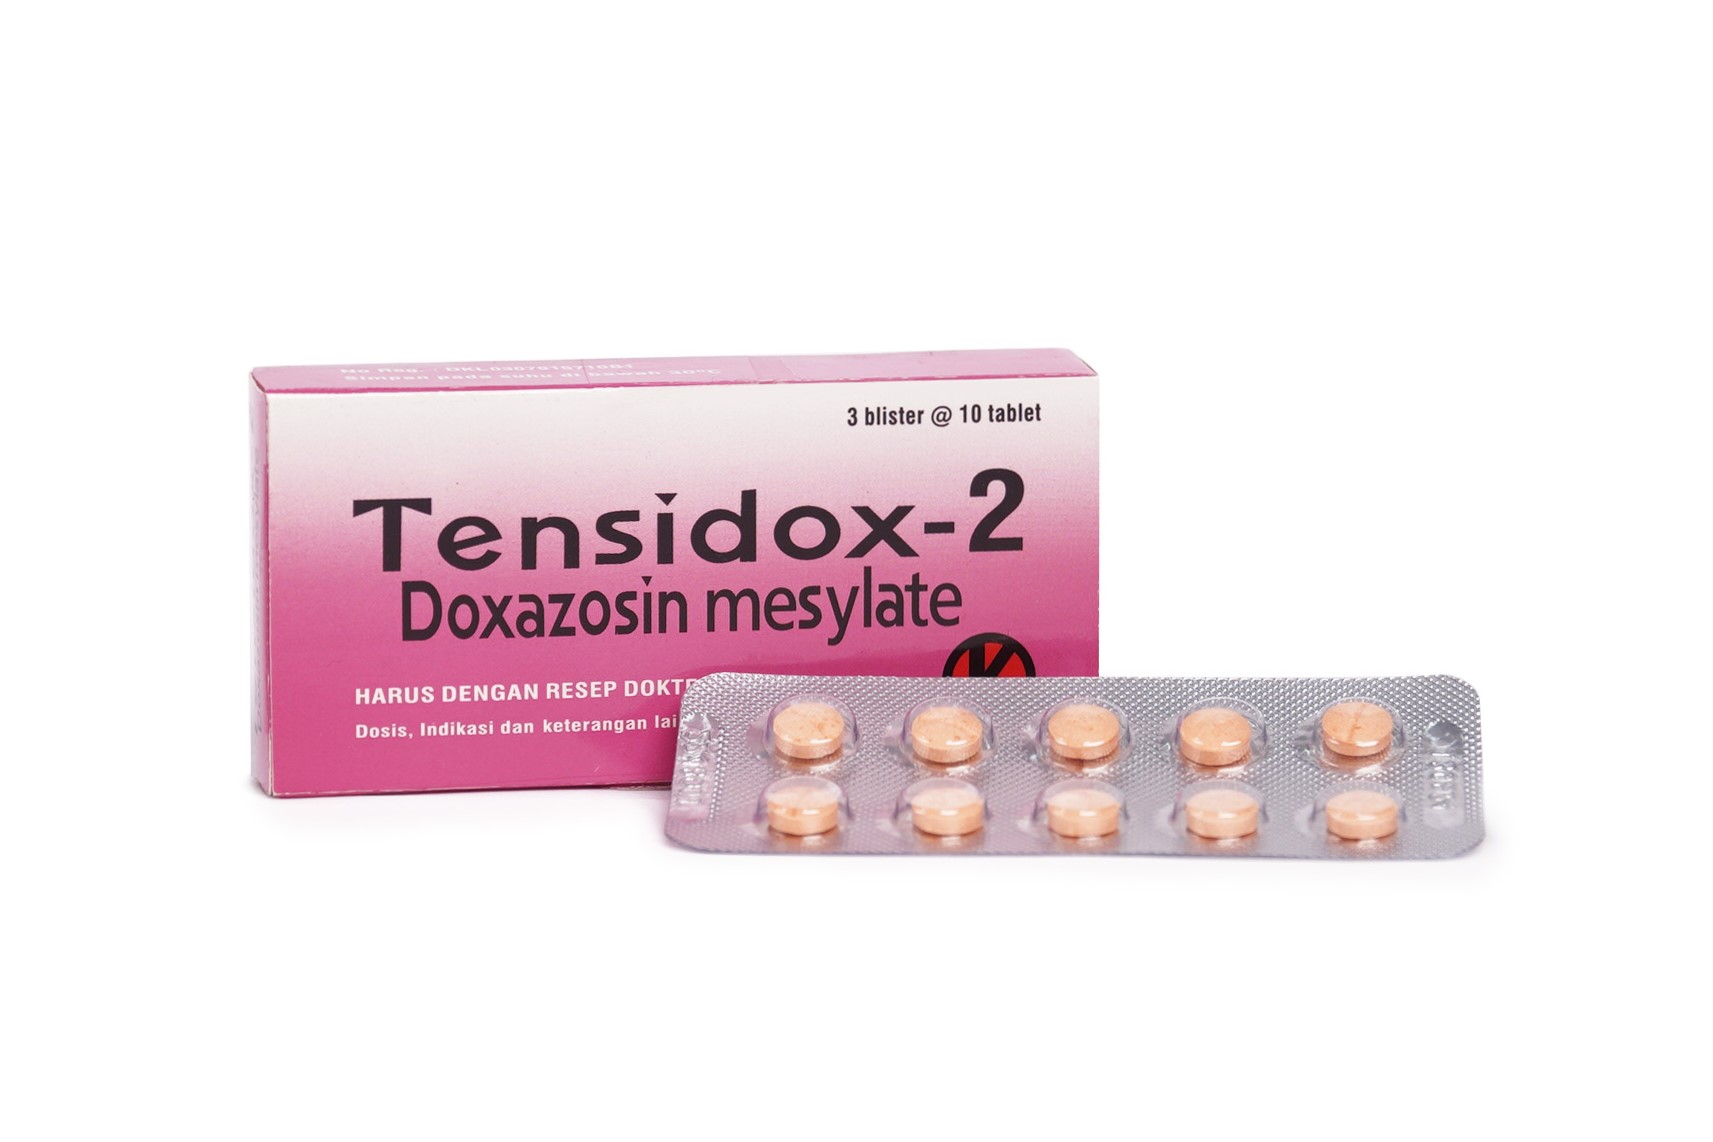 Tensidox-2